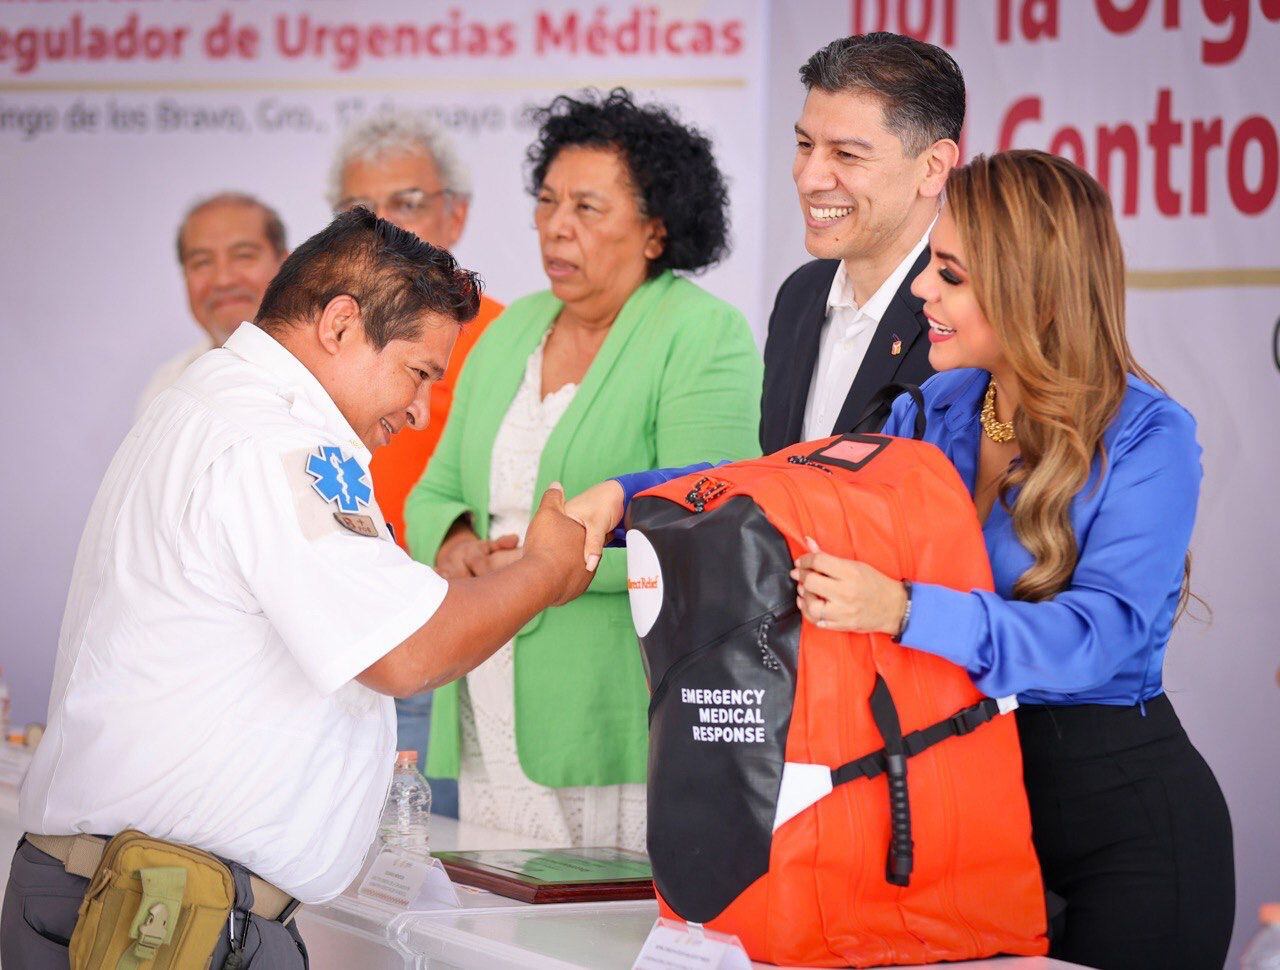 Encabeza Evelyn Salgado entrega de insumos y equipamiento donados por la ONG “Direct Relief”